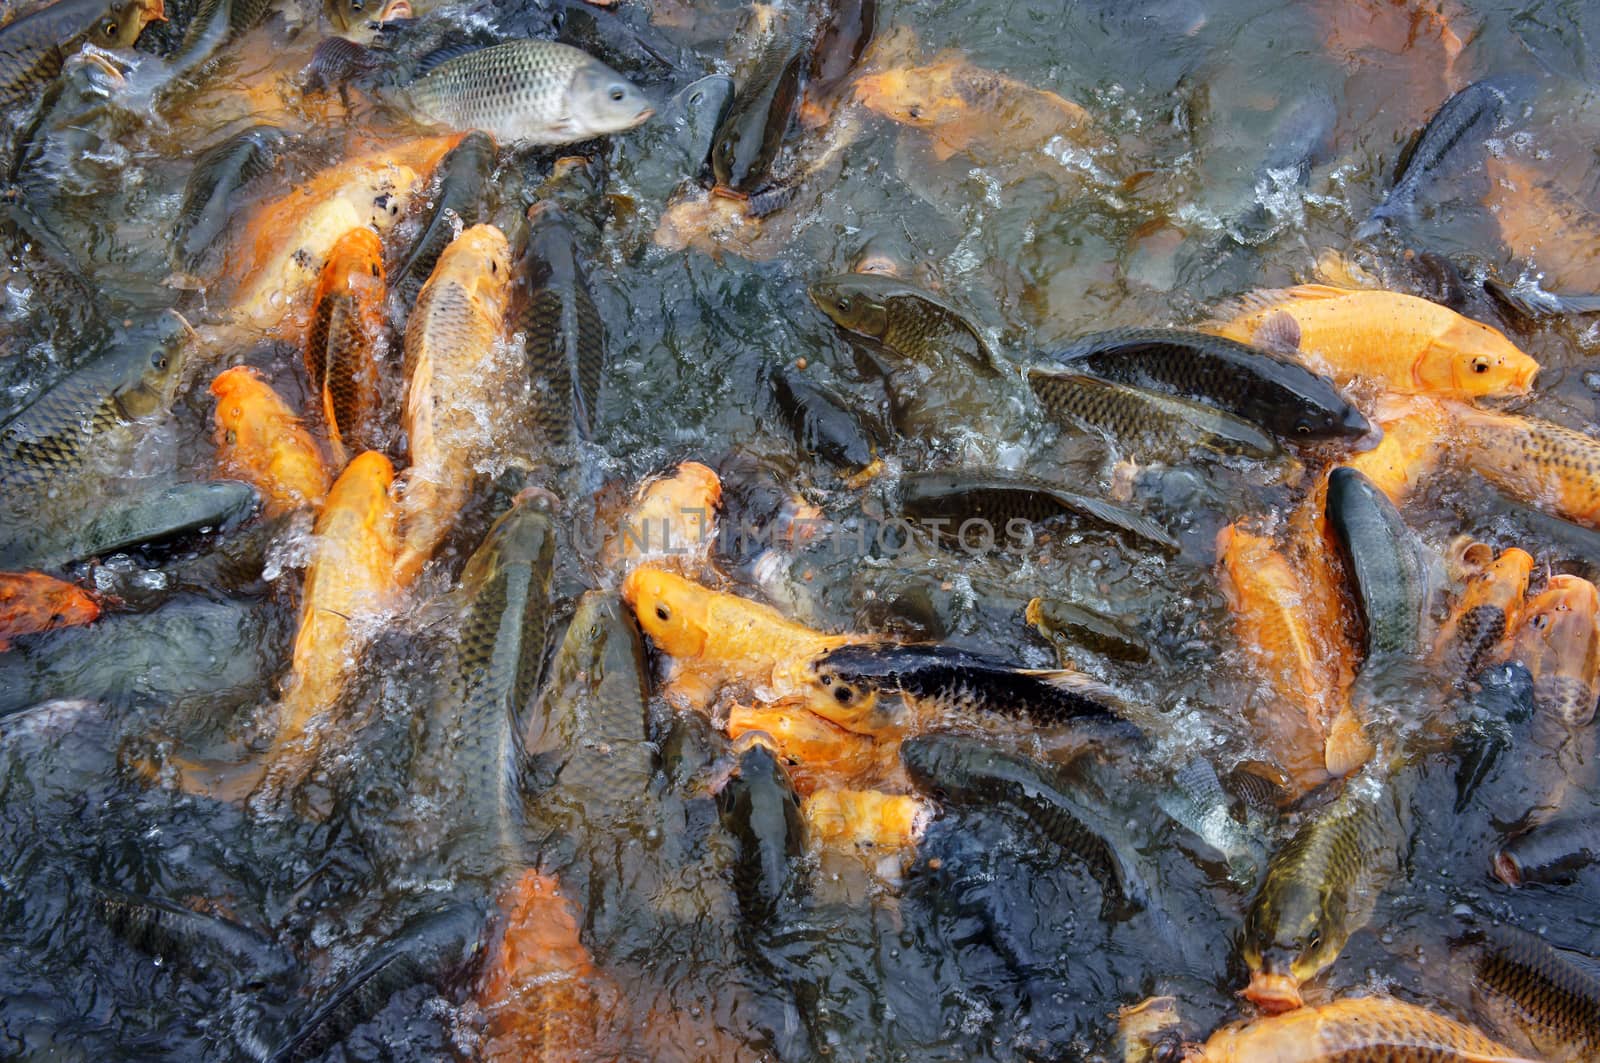 Vietnam fish farming by xuanhuongho